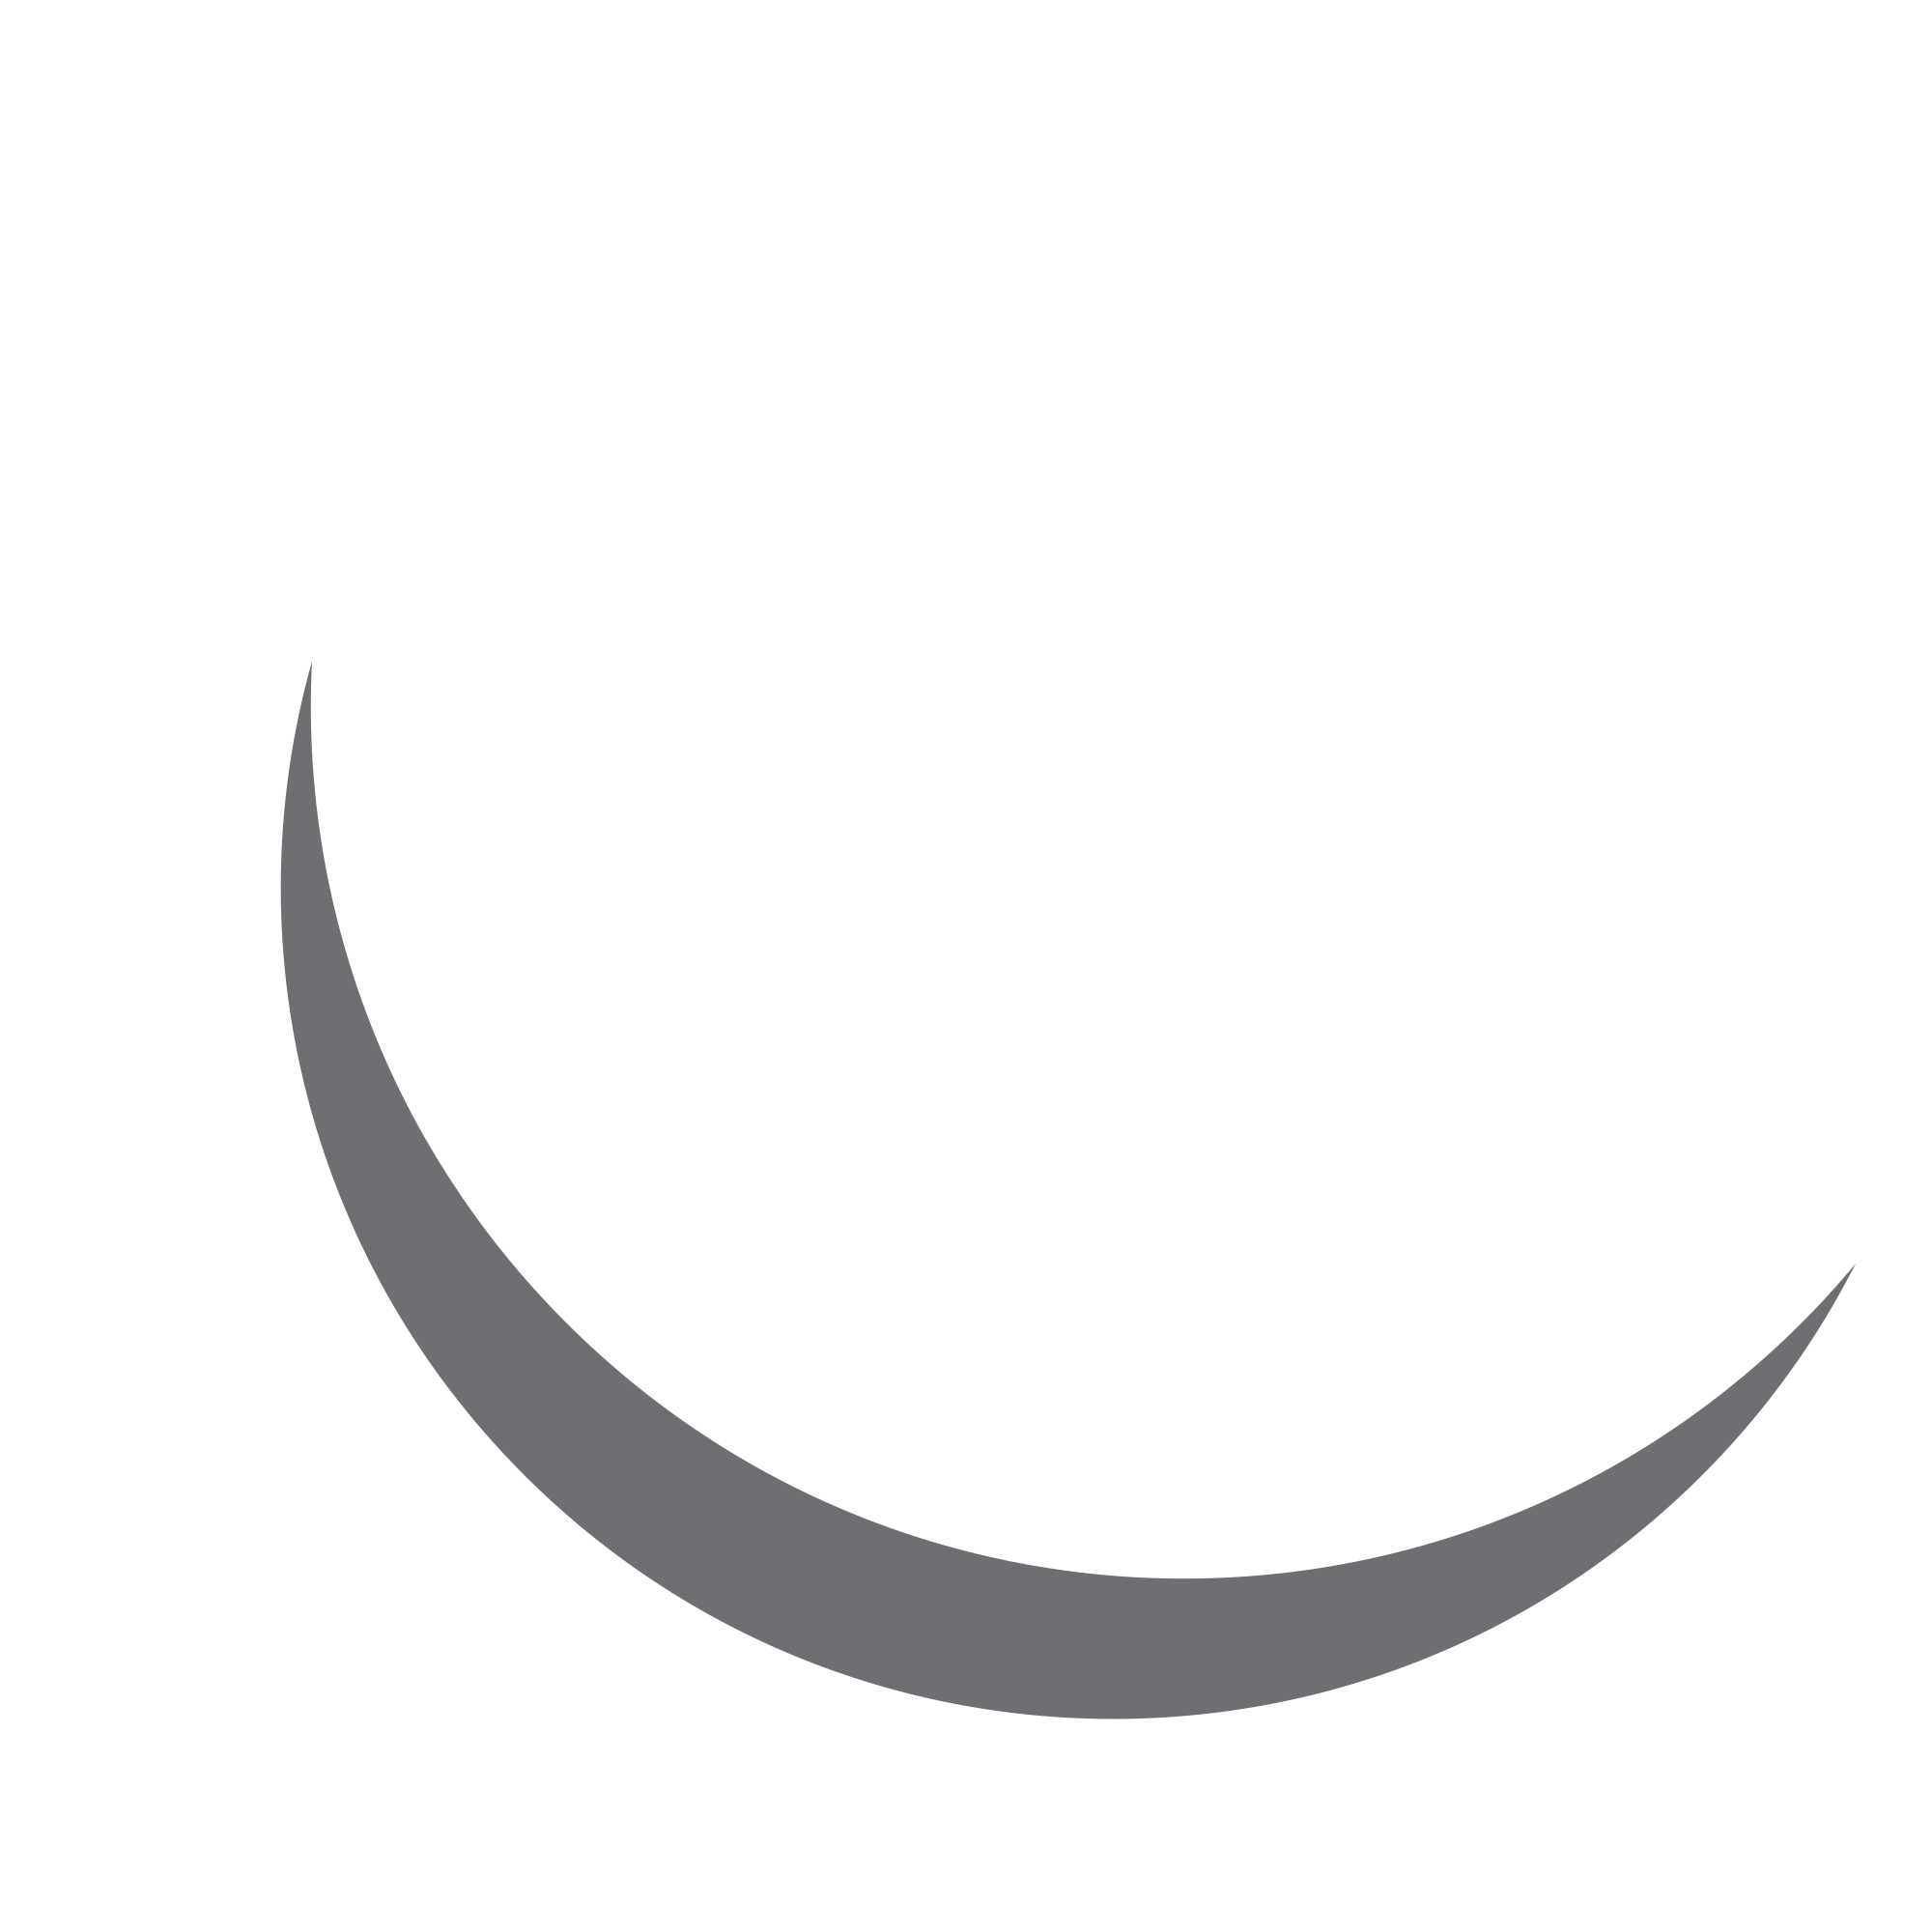 holistic concept - logo